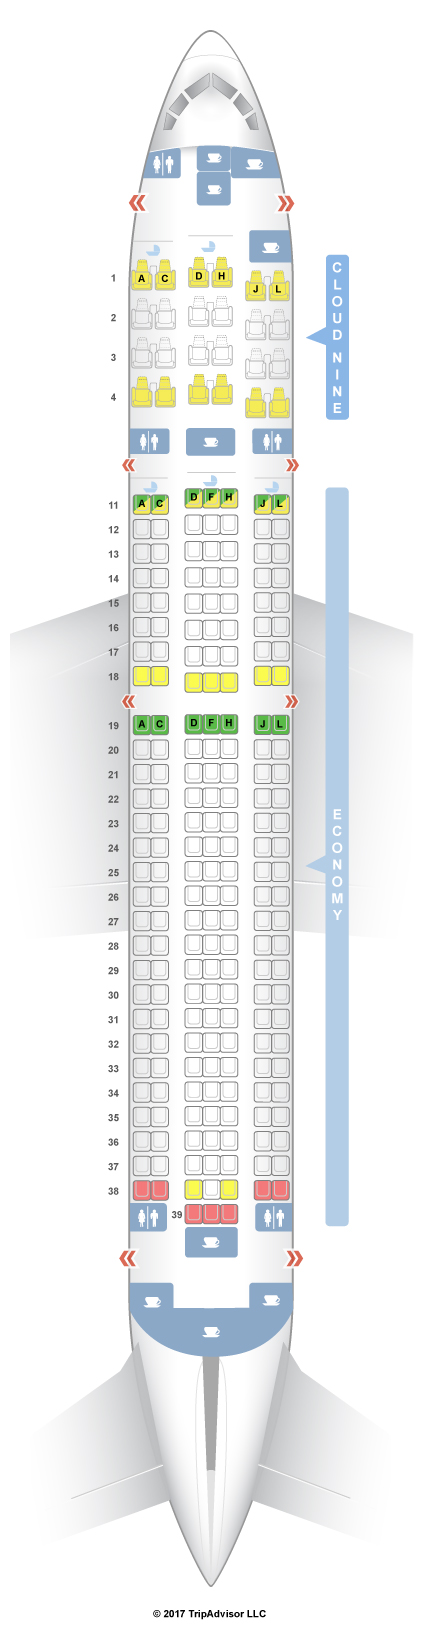 Aircraft 763 Seating Chart